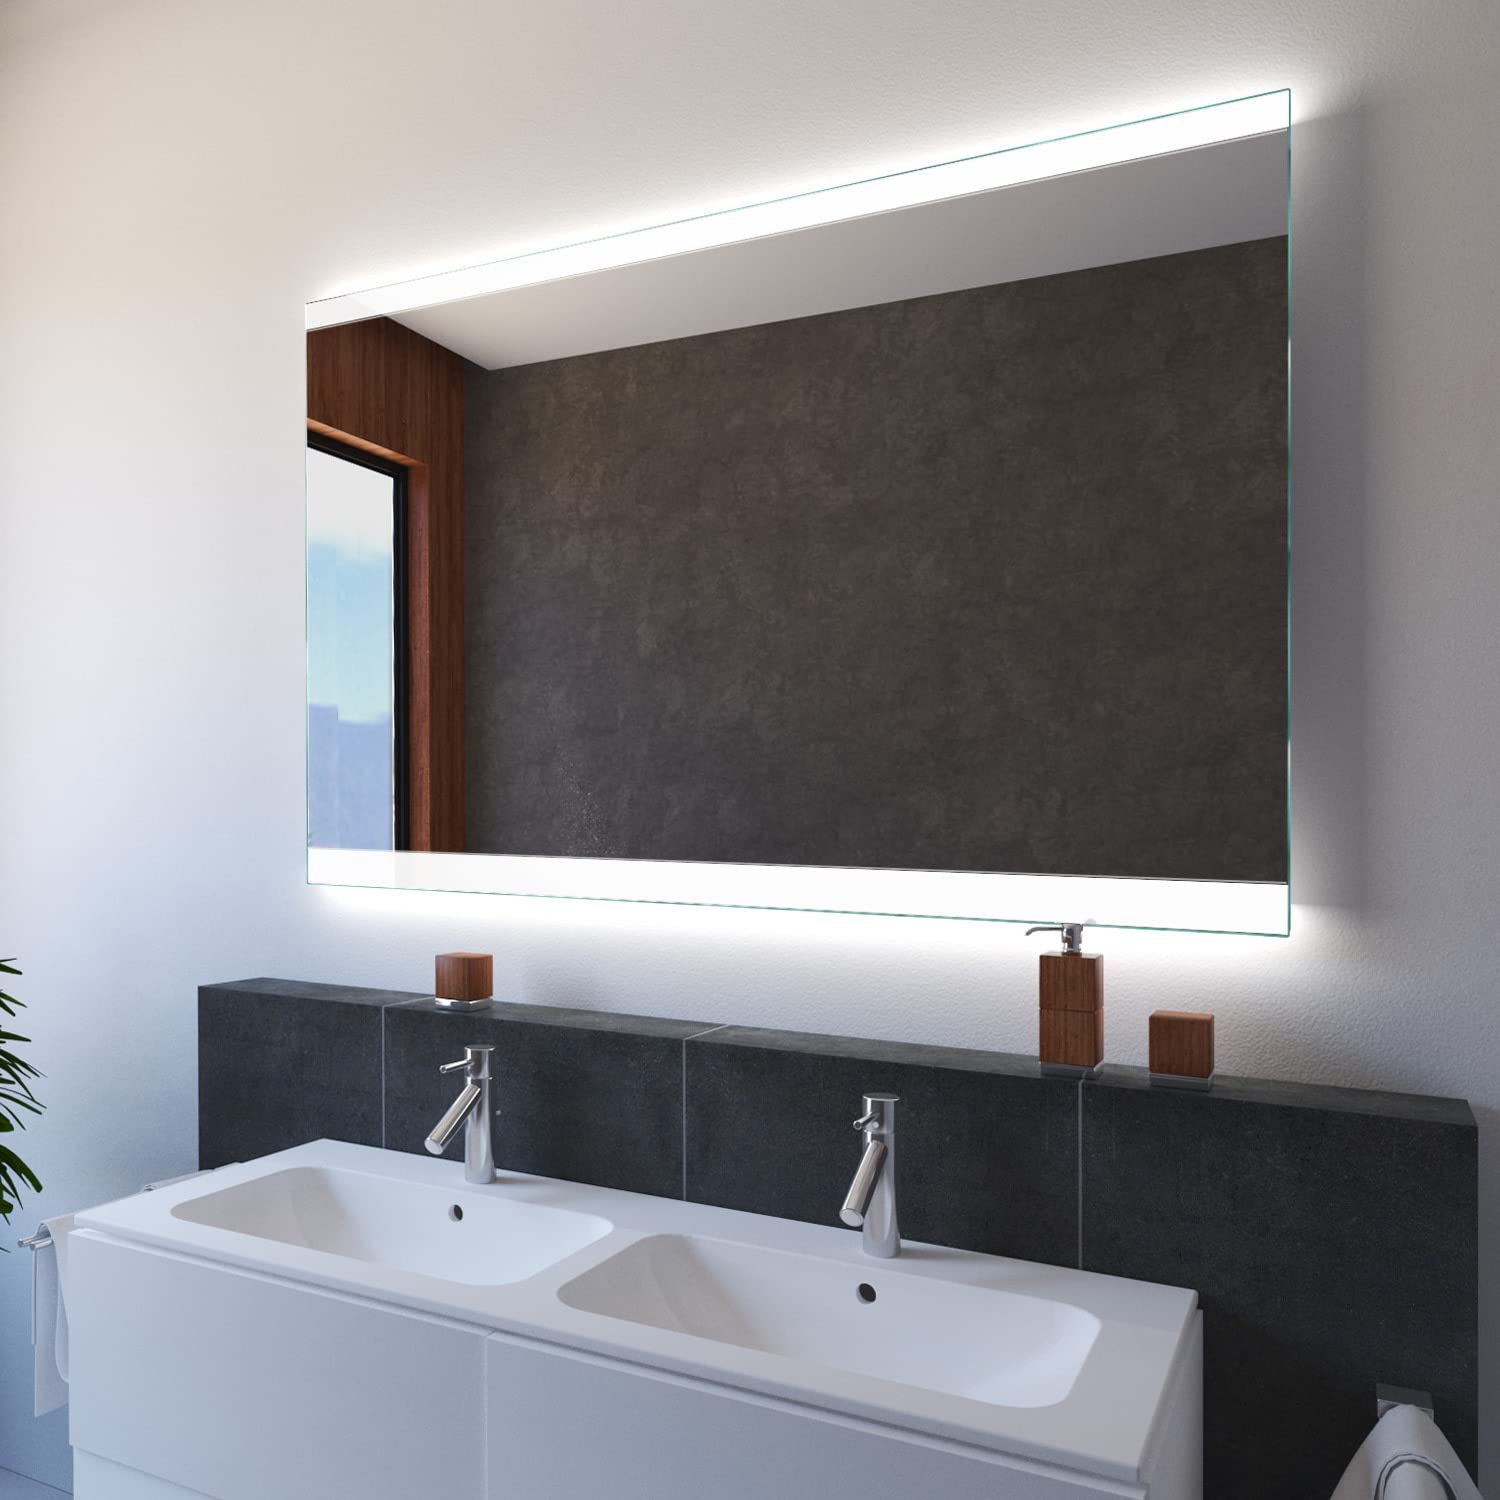 SARAR Wandspiegel mit LED-Beleuchtung 120x70cm Made in Germany Designo MA2510 Badspiegel Spiegel mit Beleuchtung Badezimmerspiegel nach-auf Maß